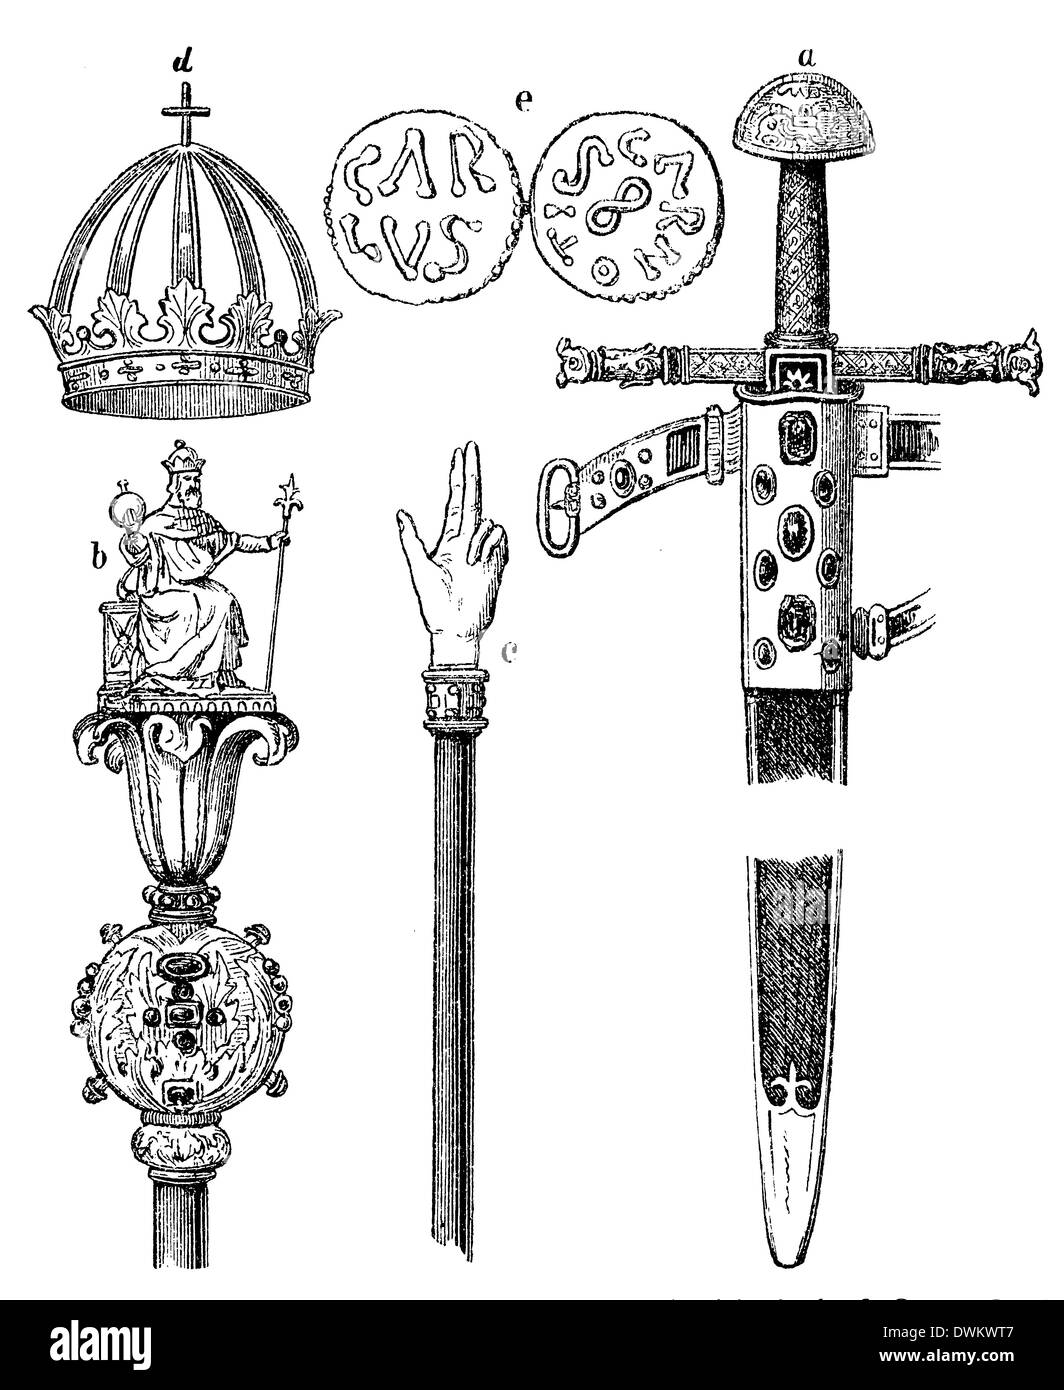 Schwert (a), Zepter (B), Gerichtsstab (c) Und Krone (d) Karls des Großen Sowie Münzen (e) aus der Zeit Karls des Großen Stockfoto